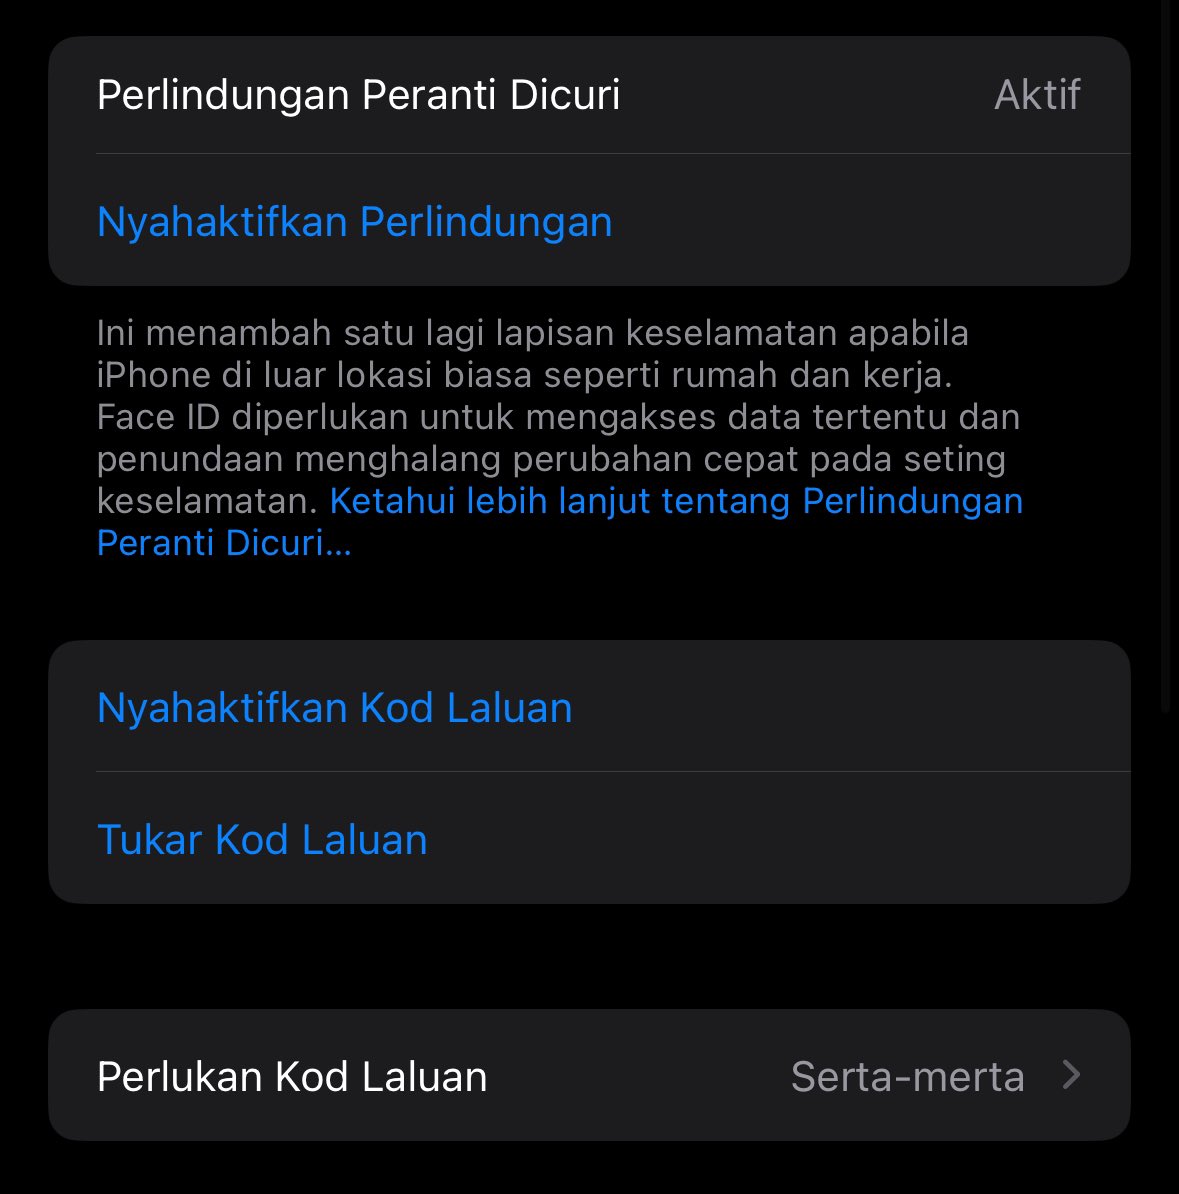 Hari ini Apple telah melancarkan iOS 17.3 dengan fungsi Pelindungan Peranti Dicuri. Fitur ini merupakan satu lapisan keselamatan yang diaktifkan sebaik iPhone berjauhan dari lokasi rumah atau tempat kerja dan melindungi akaun serta maklumat peribadi jika iPhone dicuri.